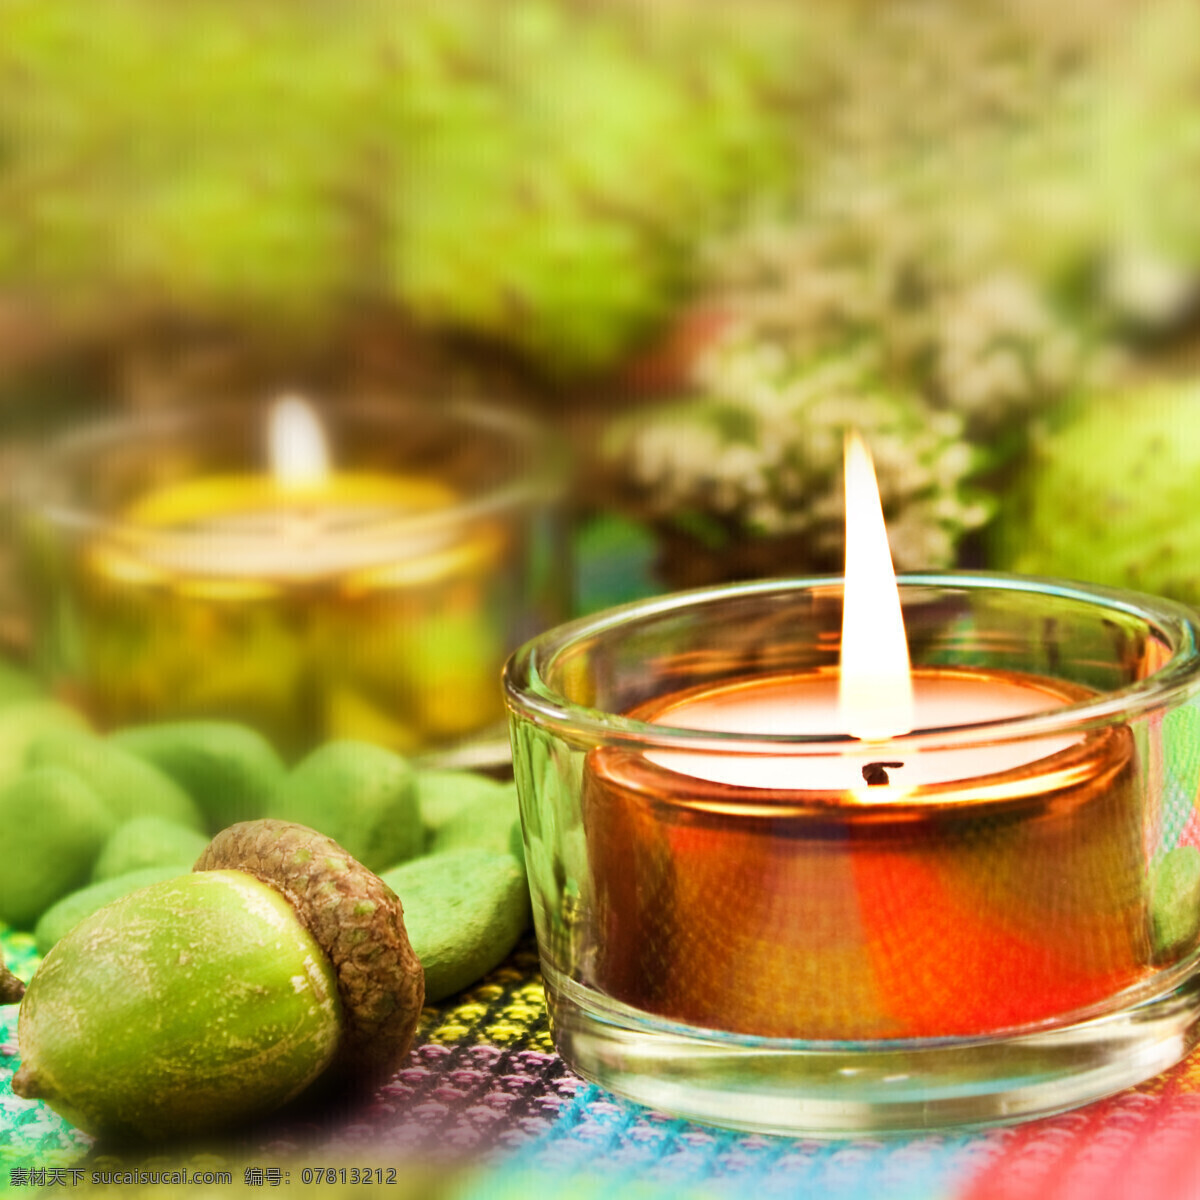 蜡烛 松果 蜡烛和松果 松塔 spa 香熏 美容 生活用品 生活百科